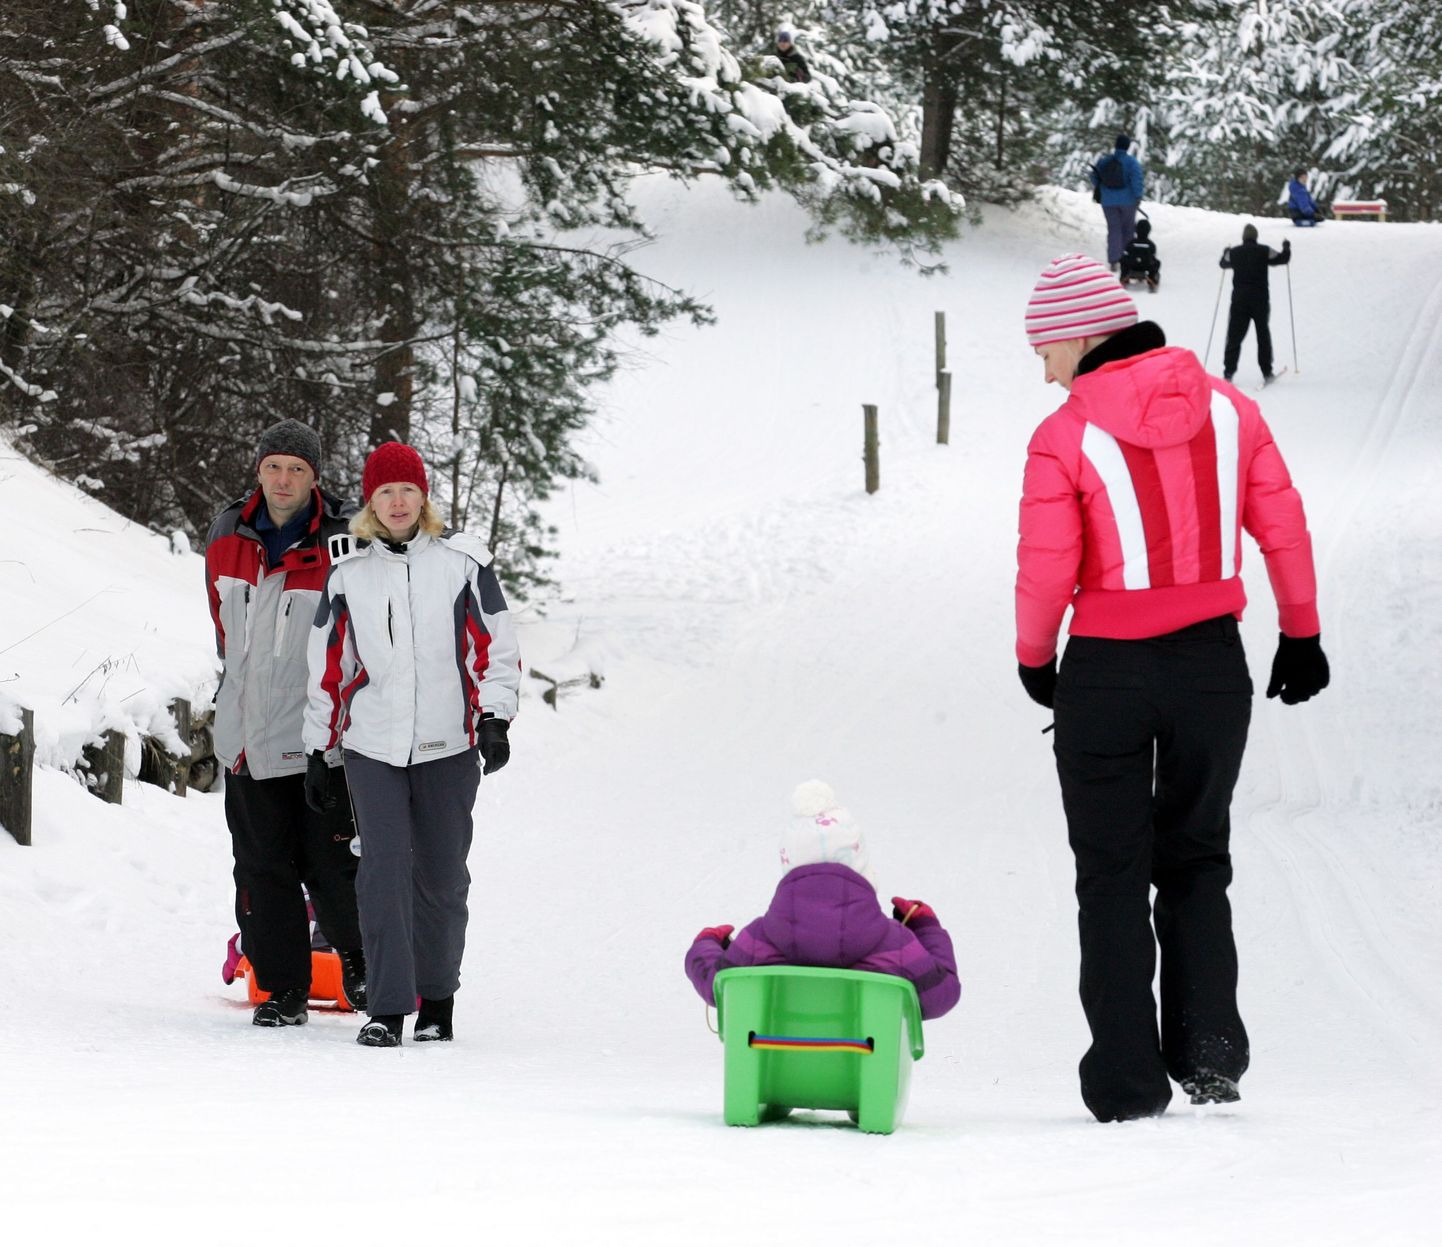 World Snow Day on FISi ehk rahvusvahelise suusaliidu korraldatav ülemaailmne lume päev.